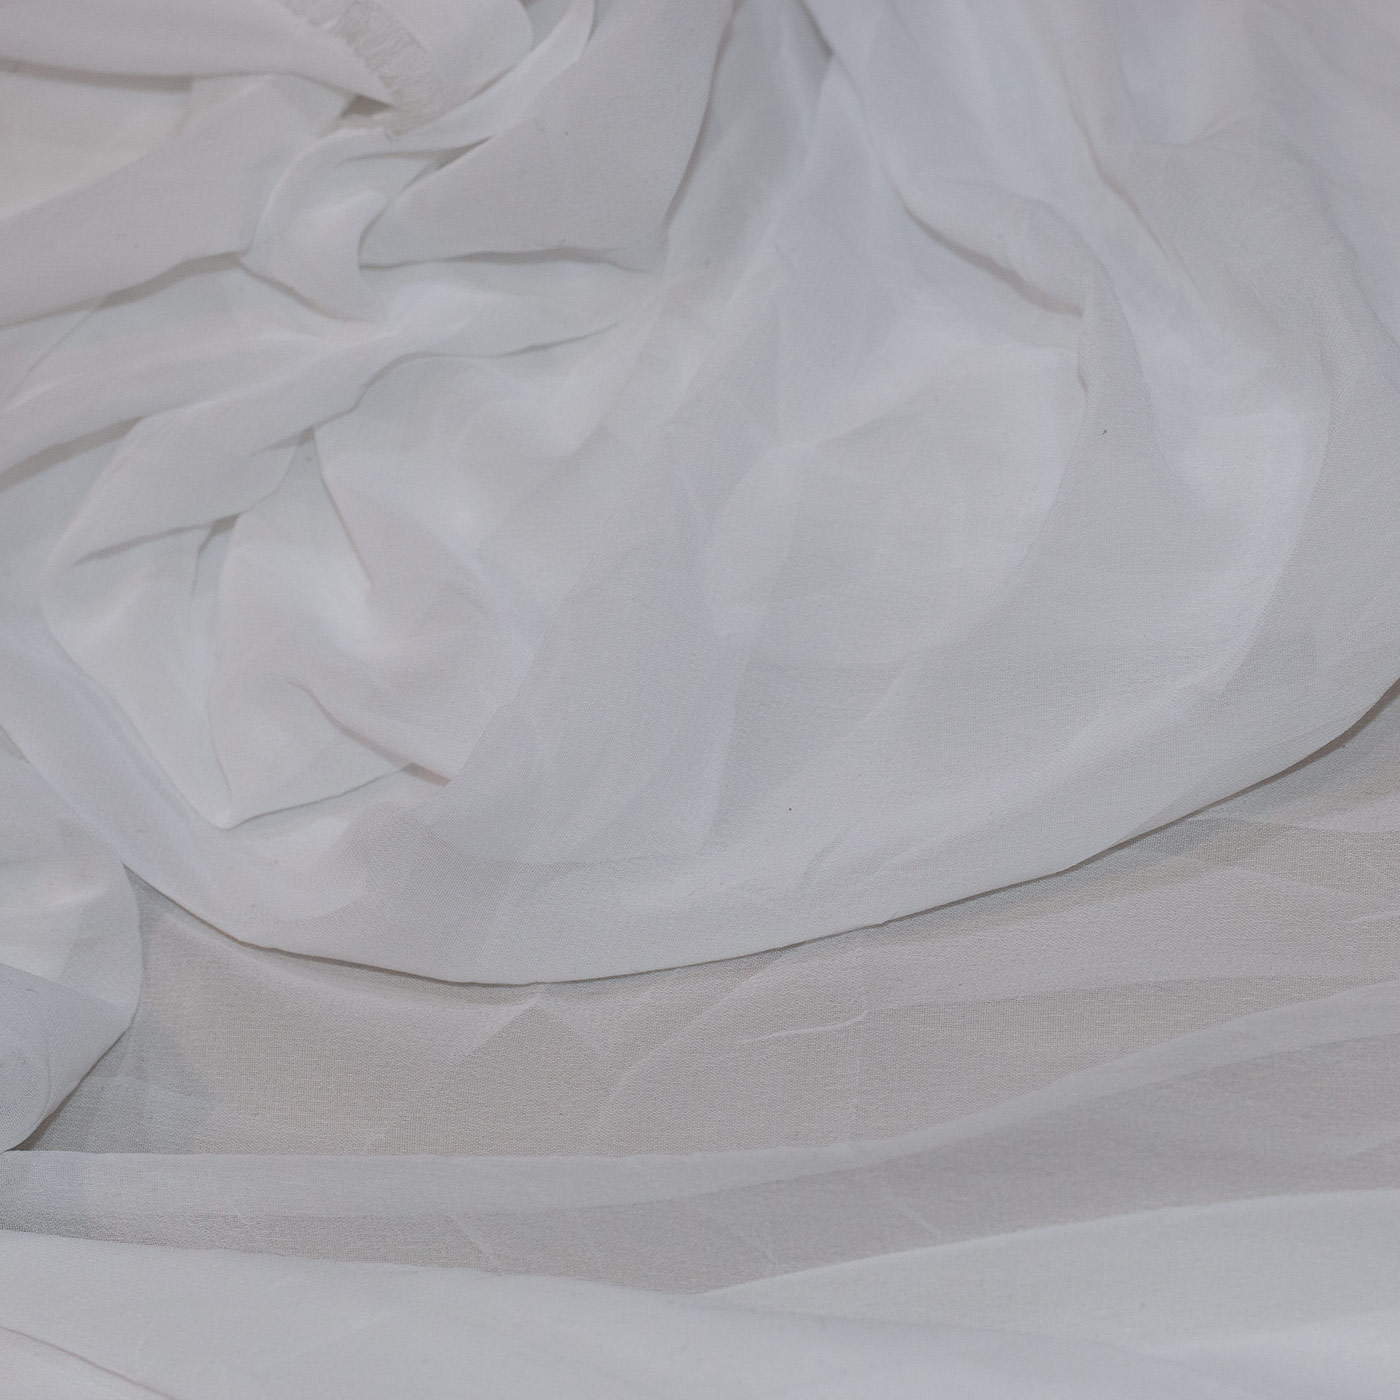 White Polyester Chiffon Fabric